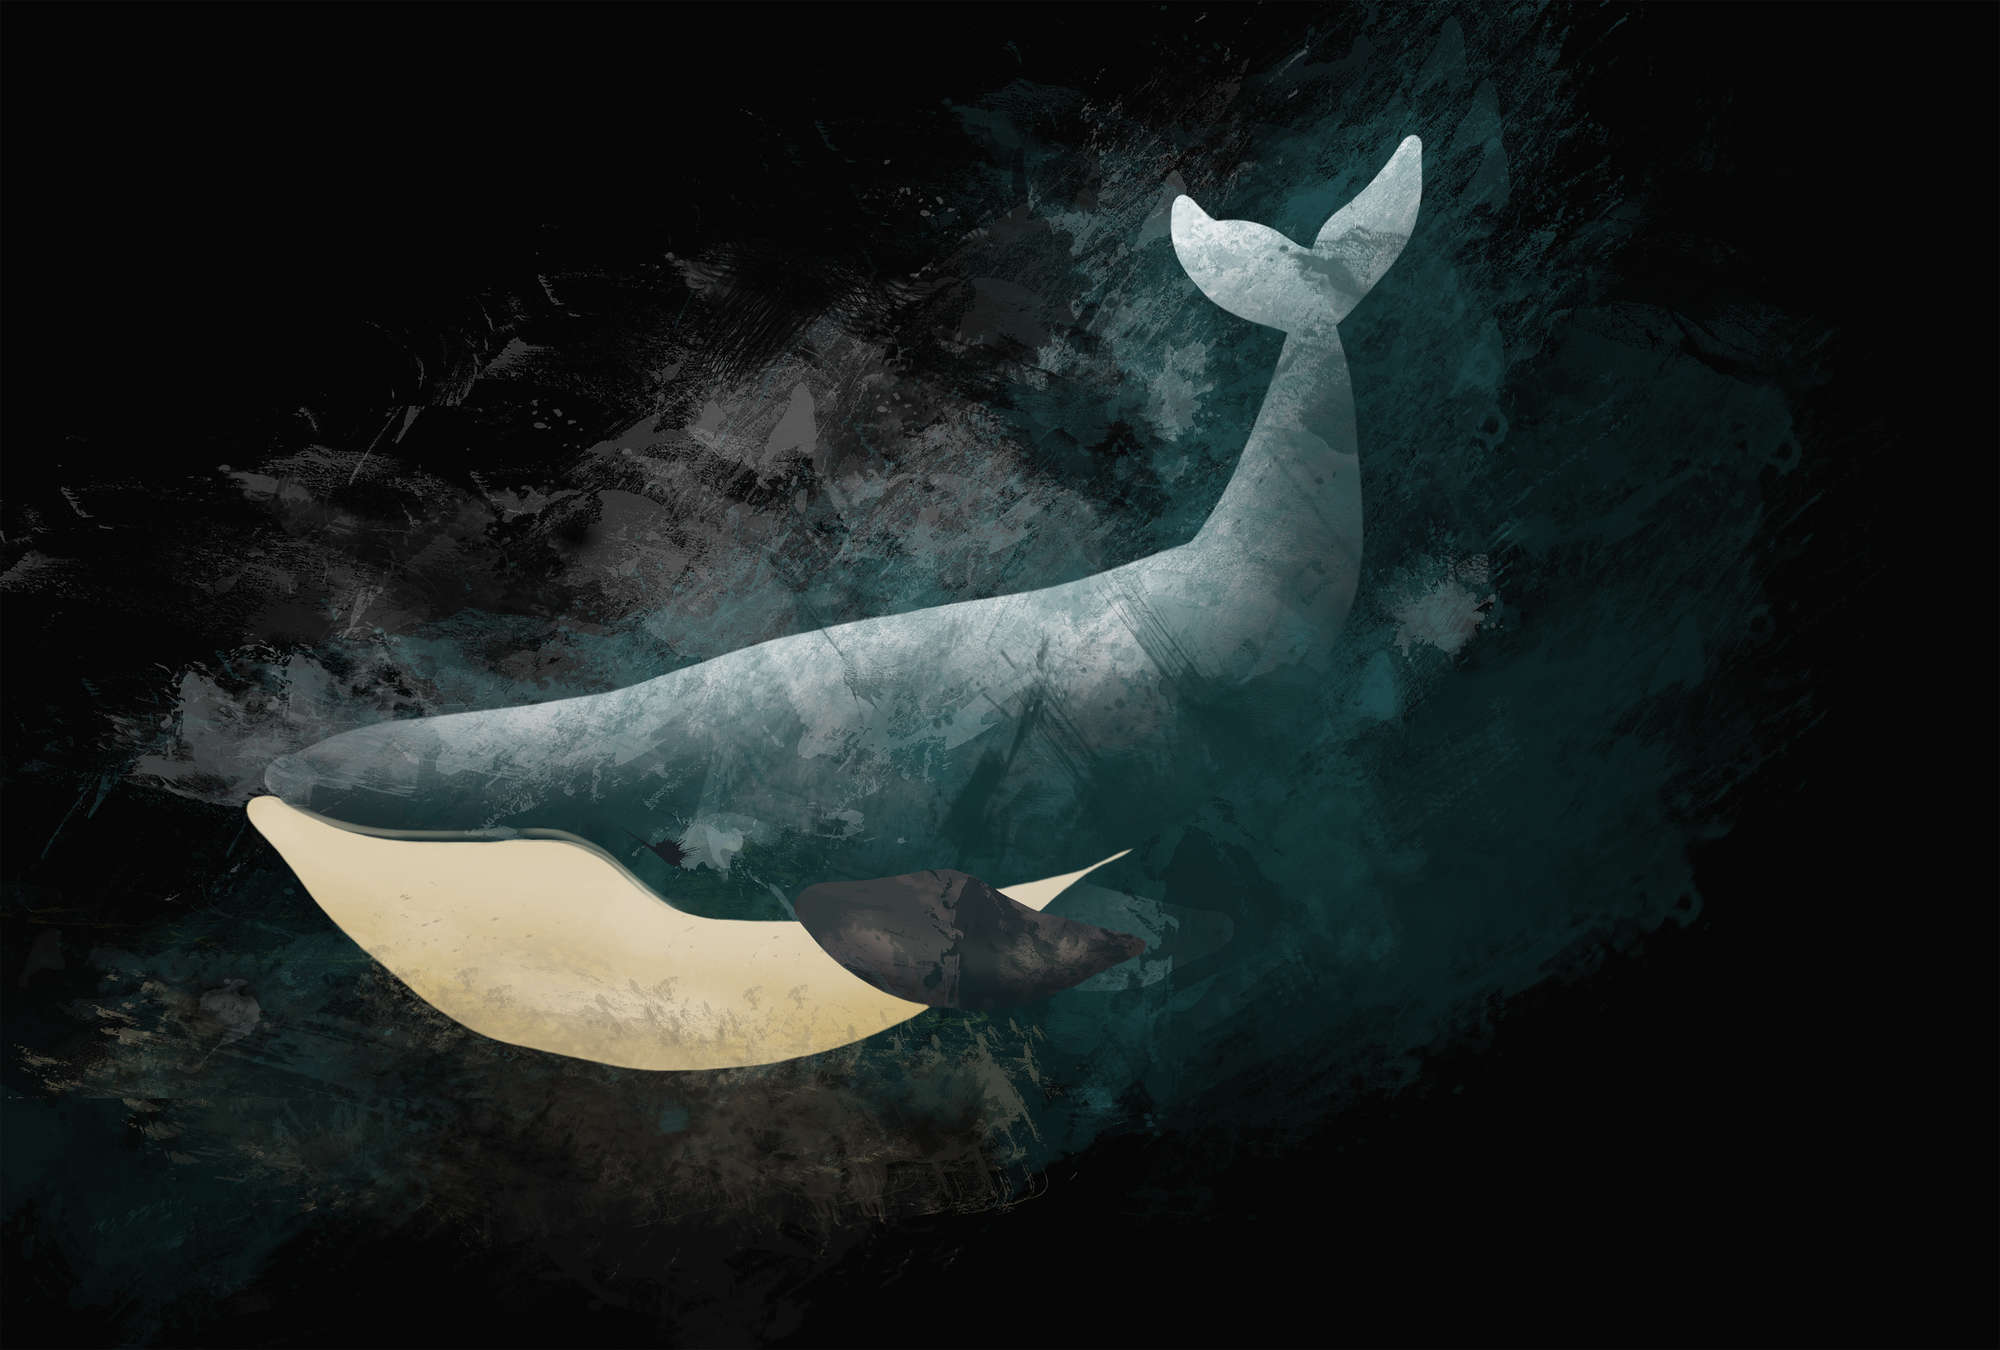             Zwart fotobehang met walvis in tekenontwerp
        